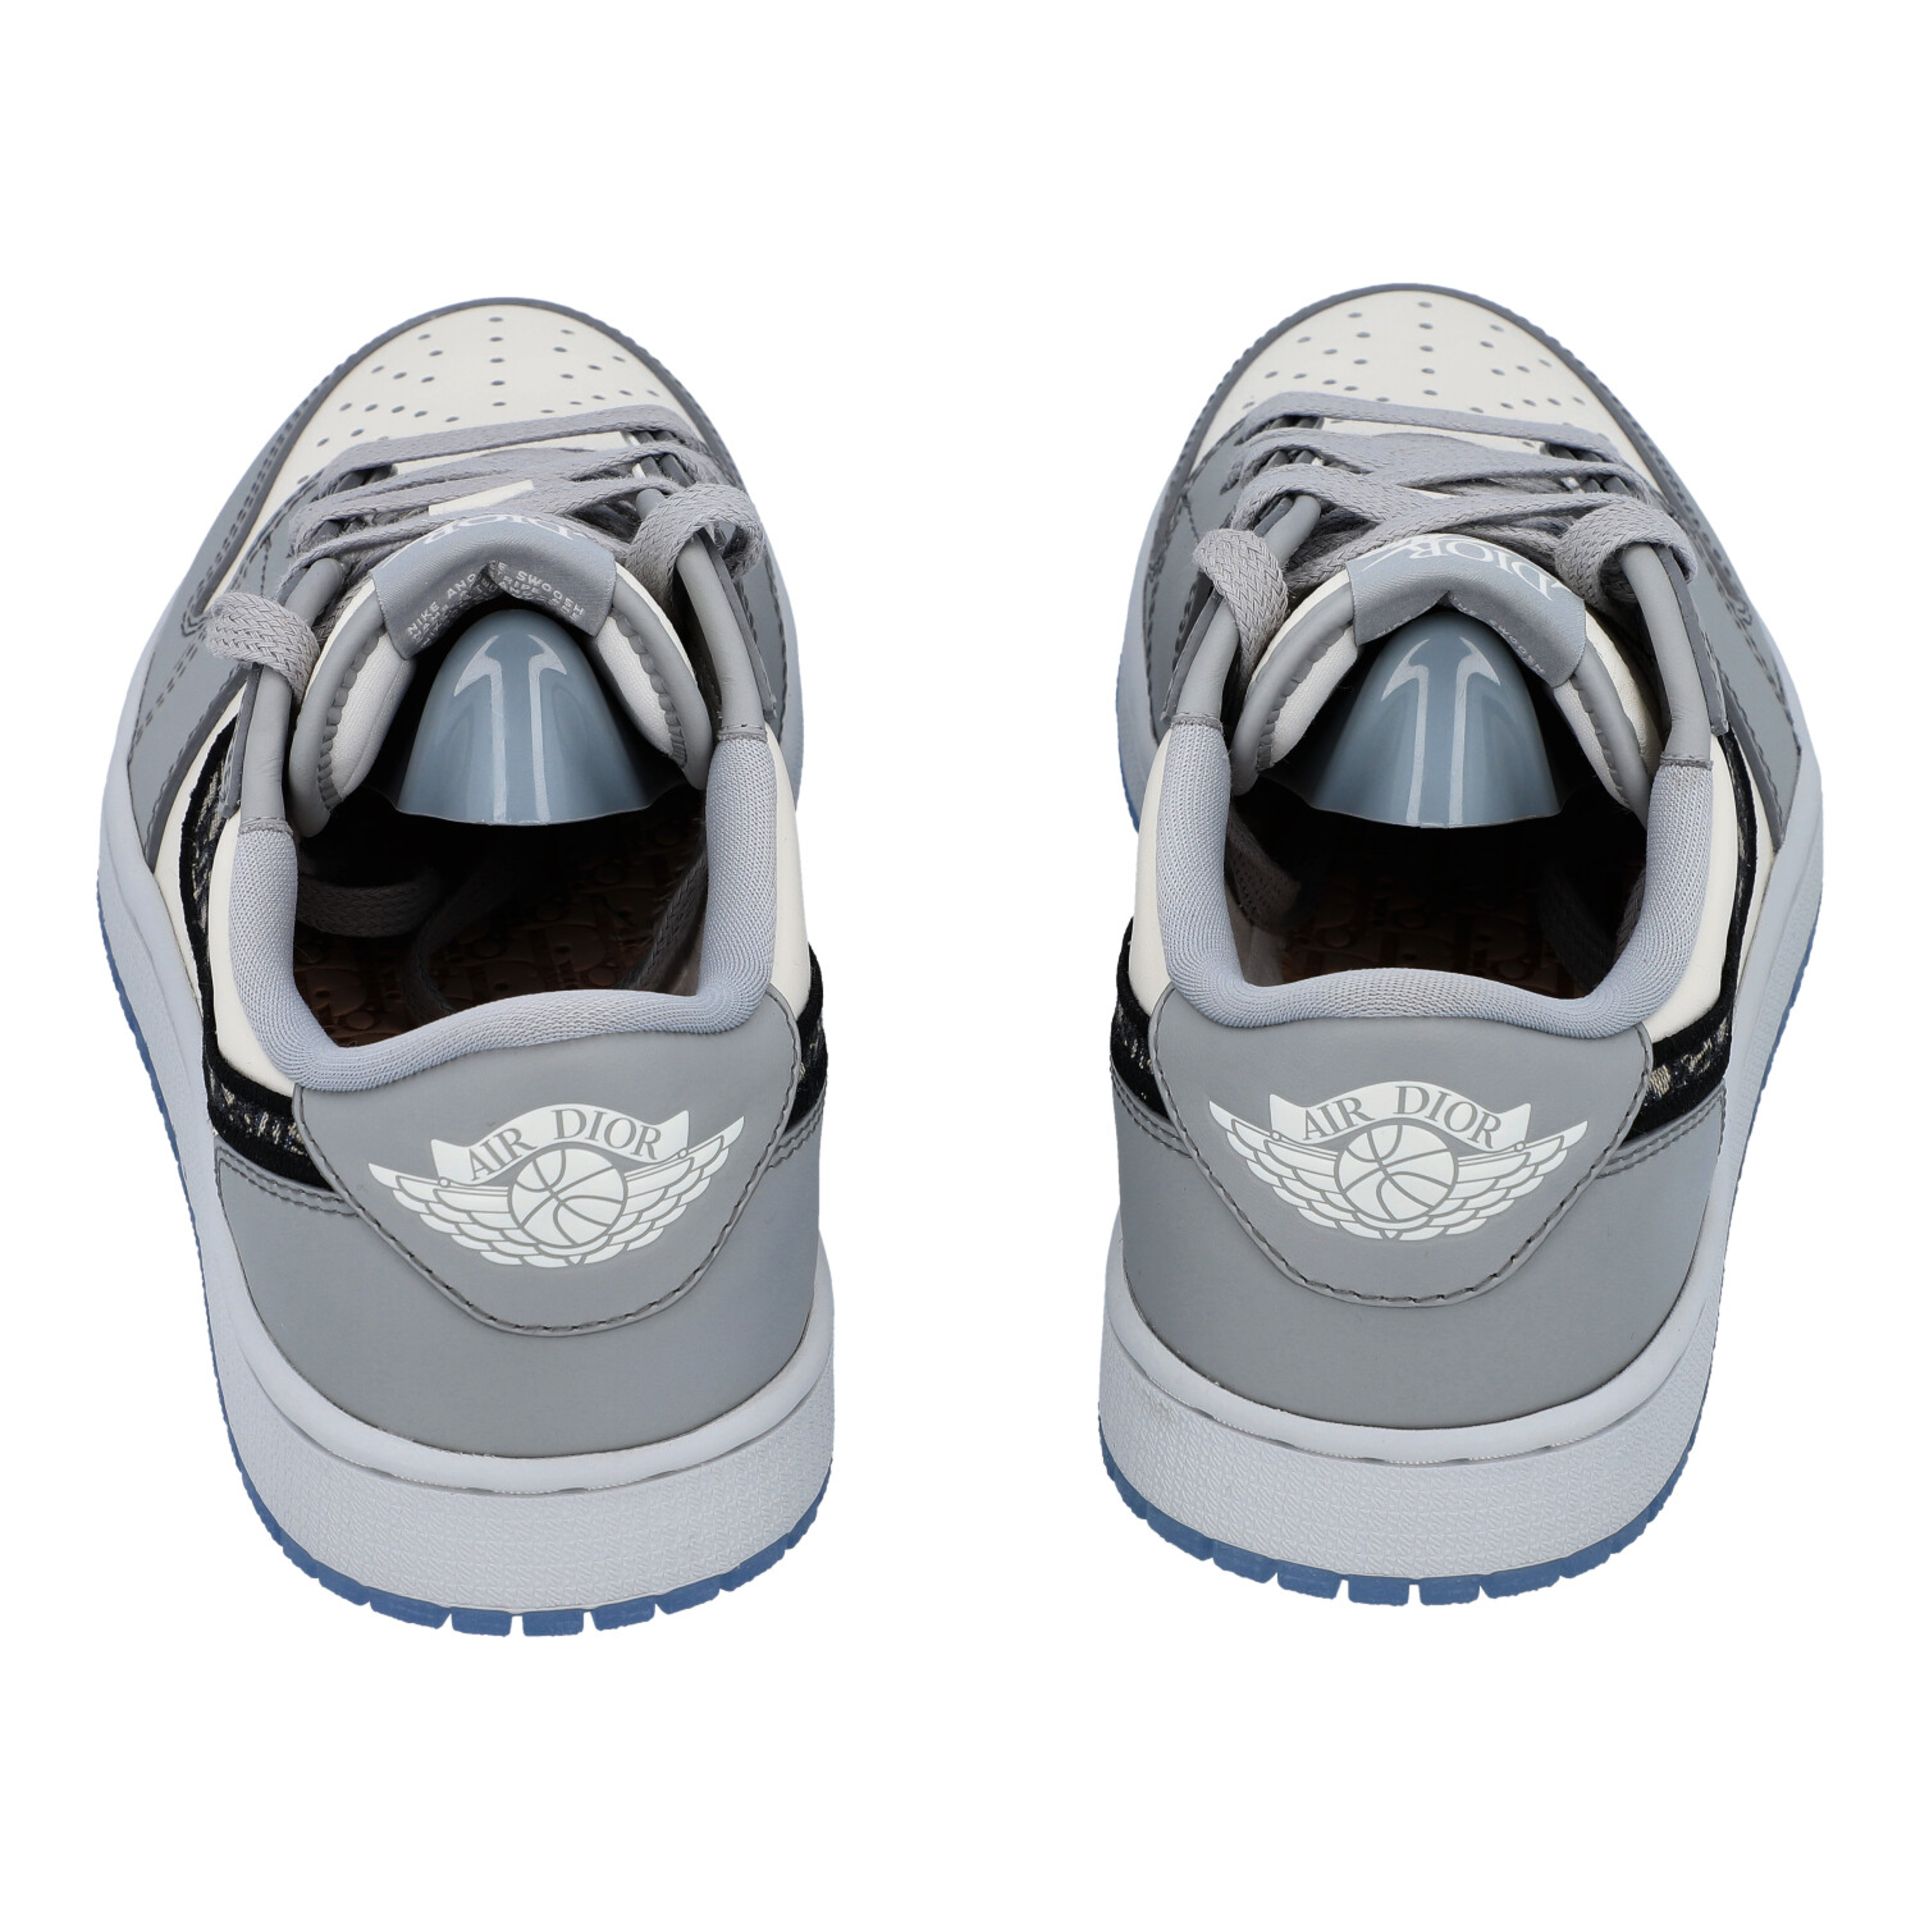 CHRISTIAN DIOR x NIKE Sneakers "AIR DIOR - LOWTOP AIR JORDAN 1 OG", Gr. 40. - Image 8 of 14